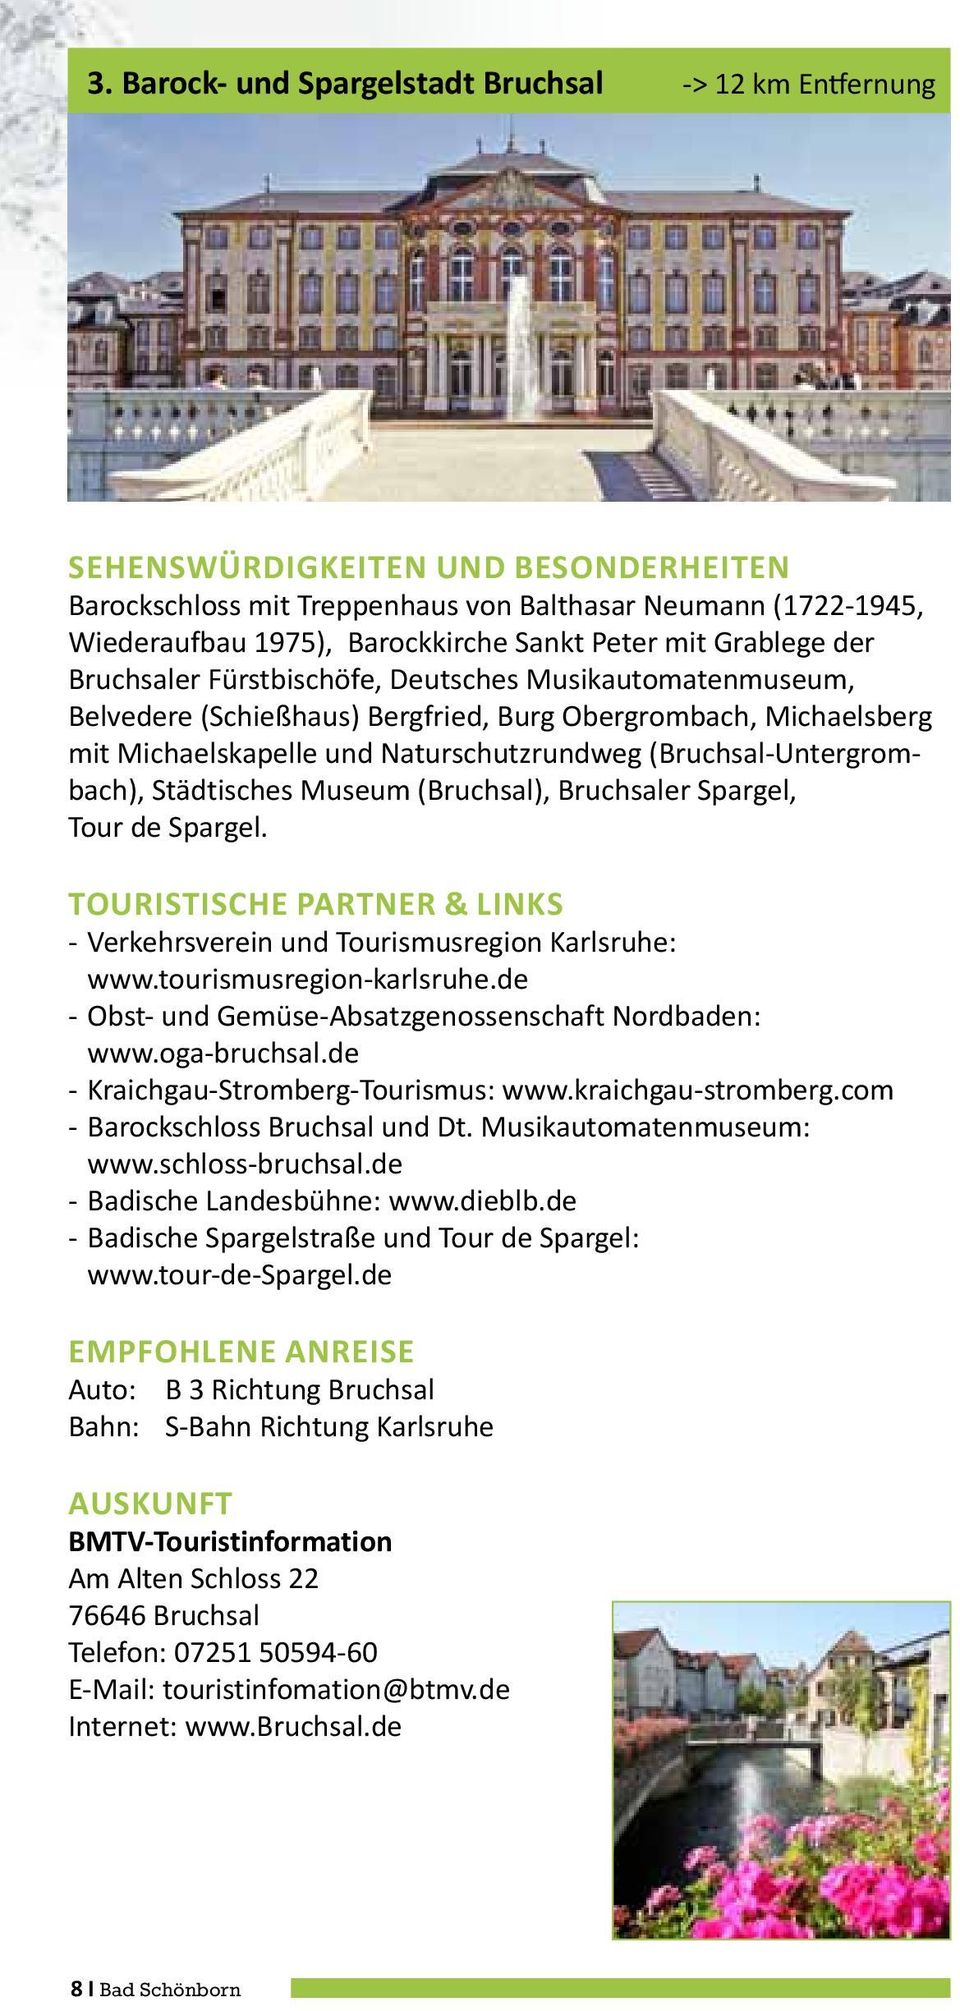 Museum (Bruchsal), Bruchsaler Spargel, Tour de Spargel. - Verkehrsverein und Tourismusregion Karlsruhe: www.tourismusregion-karlsruhe.de - Obst- und Gemüse-Absatzgenossenschaft Nordbaden: www.